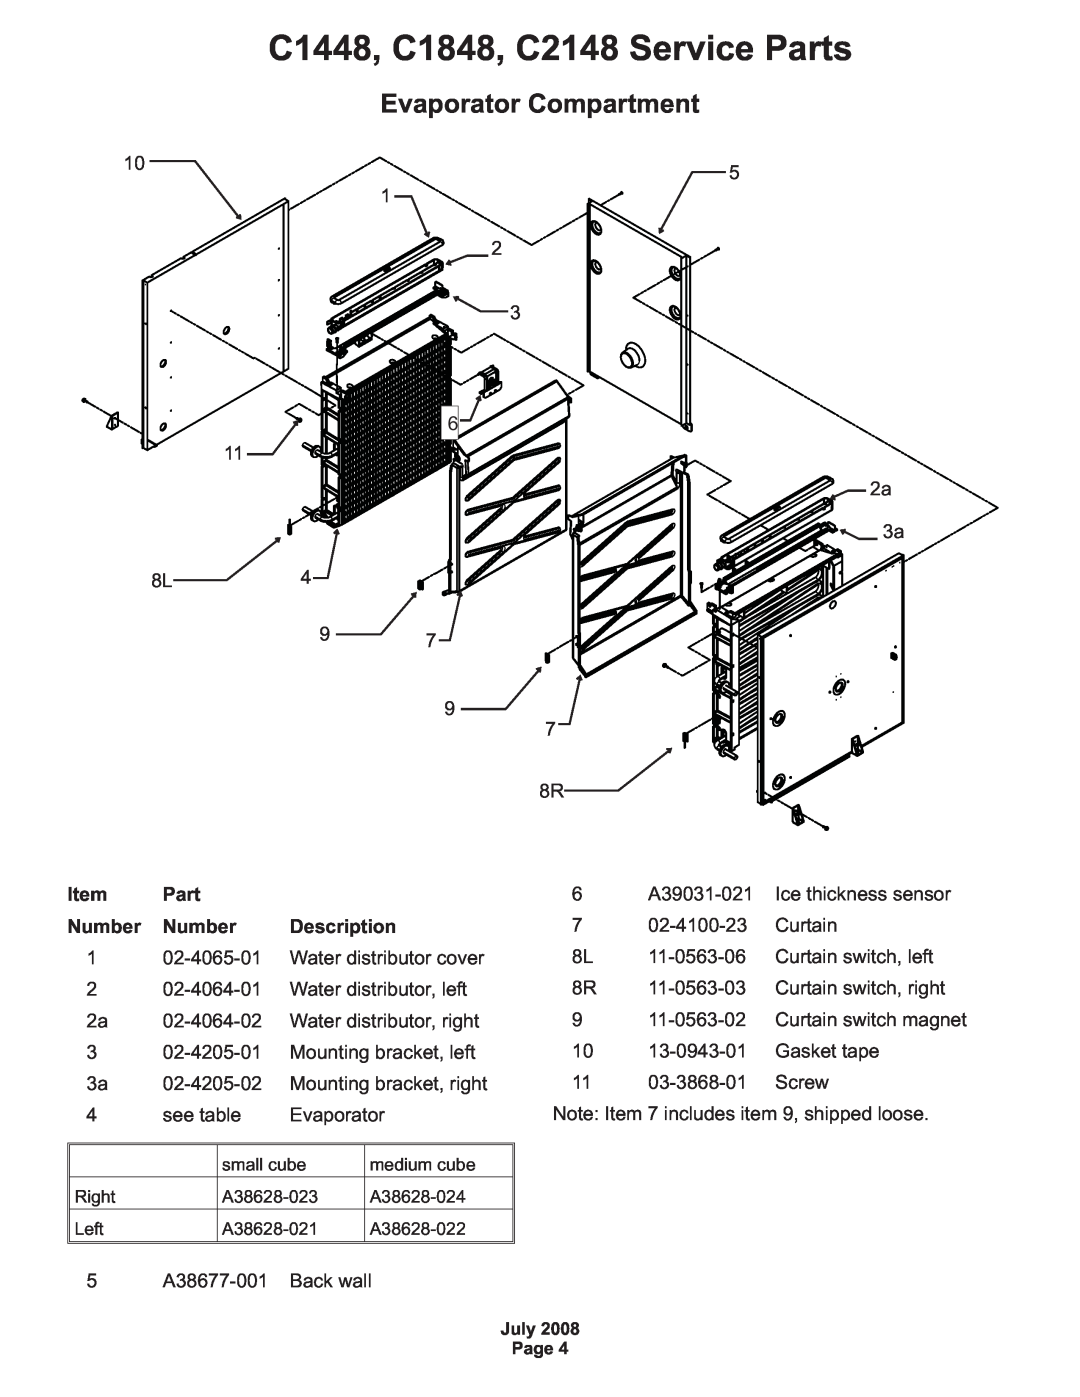 Scotsman Ice manual Evaporator Compartment, Item Part, Number Number, C1448, C1848, C2148 Service Parts 